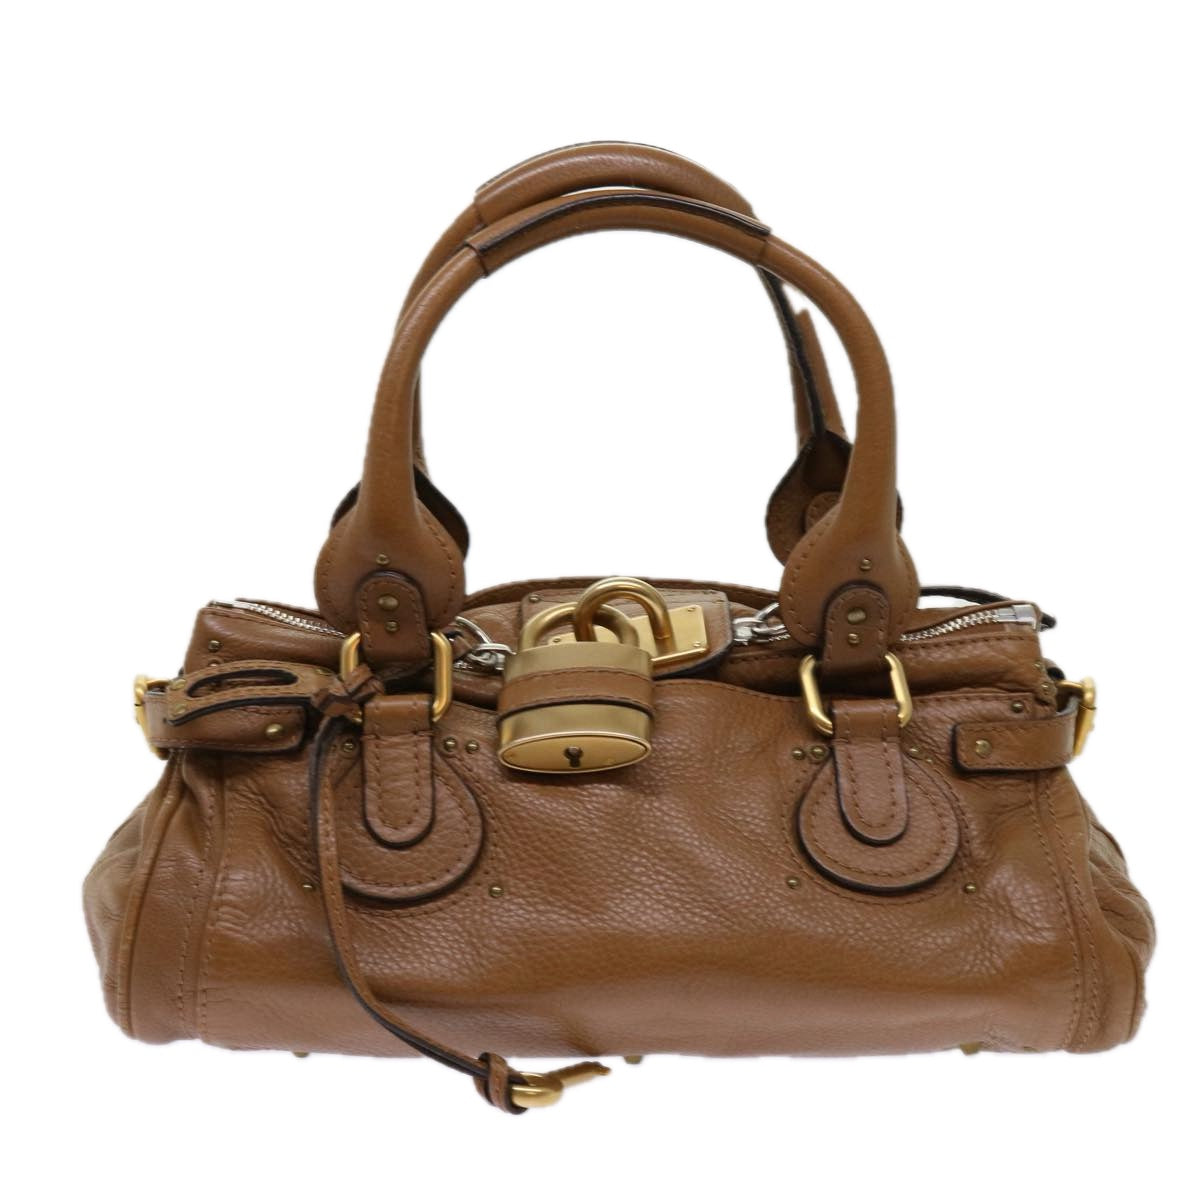 Chloe Paddington Hand Bag Leather Brown 01 09 51 5191 Auth bs10726 - 0